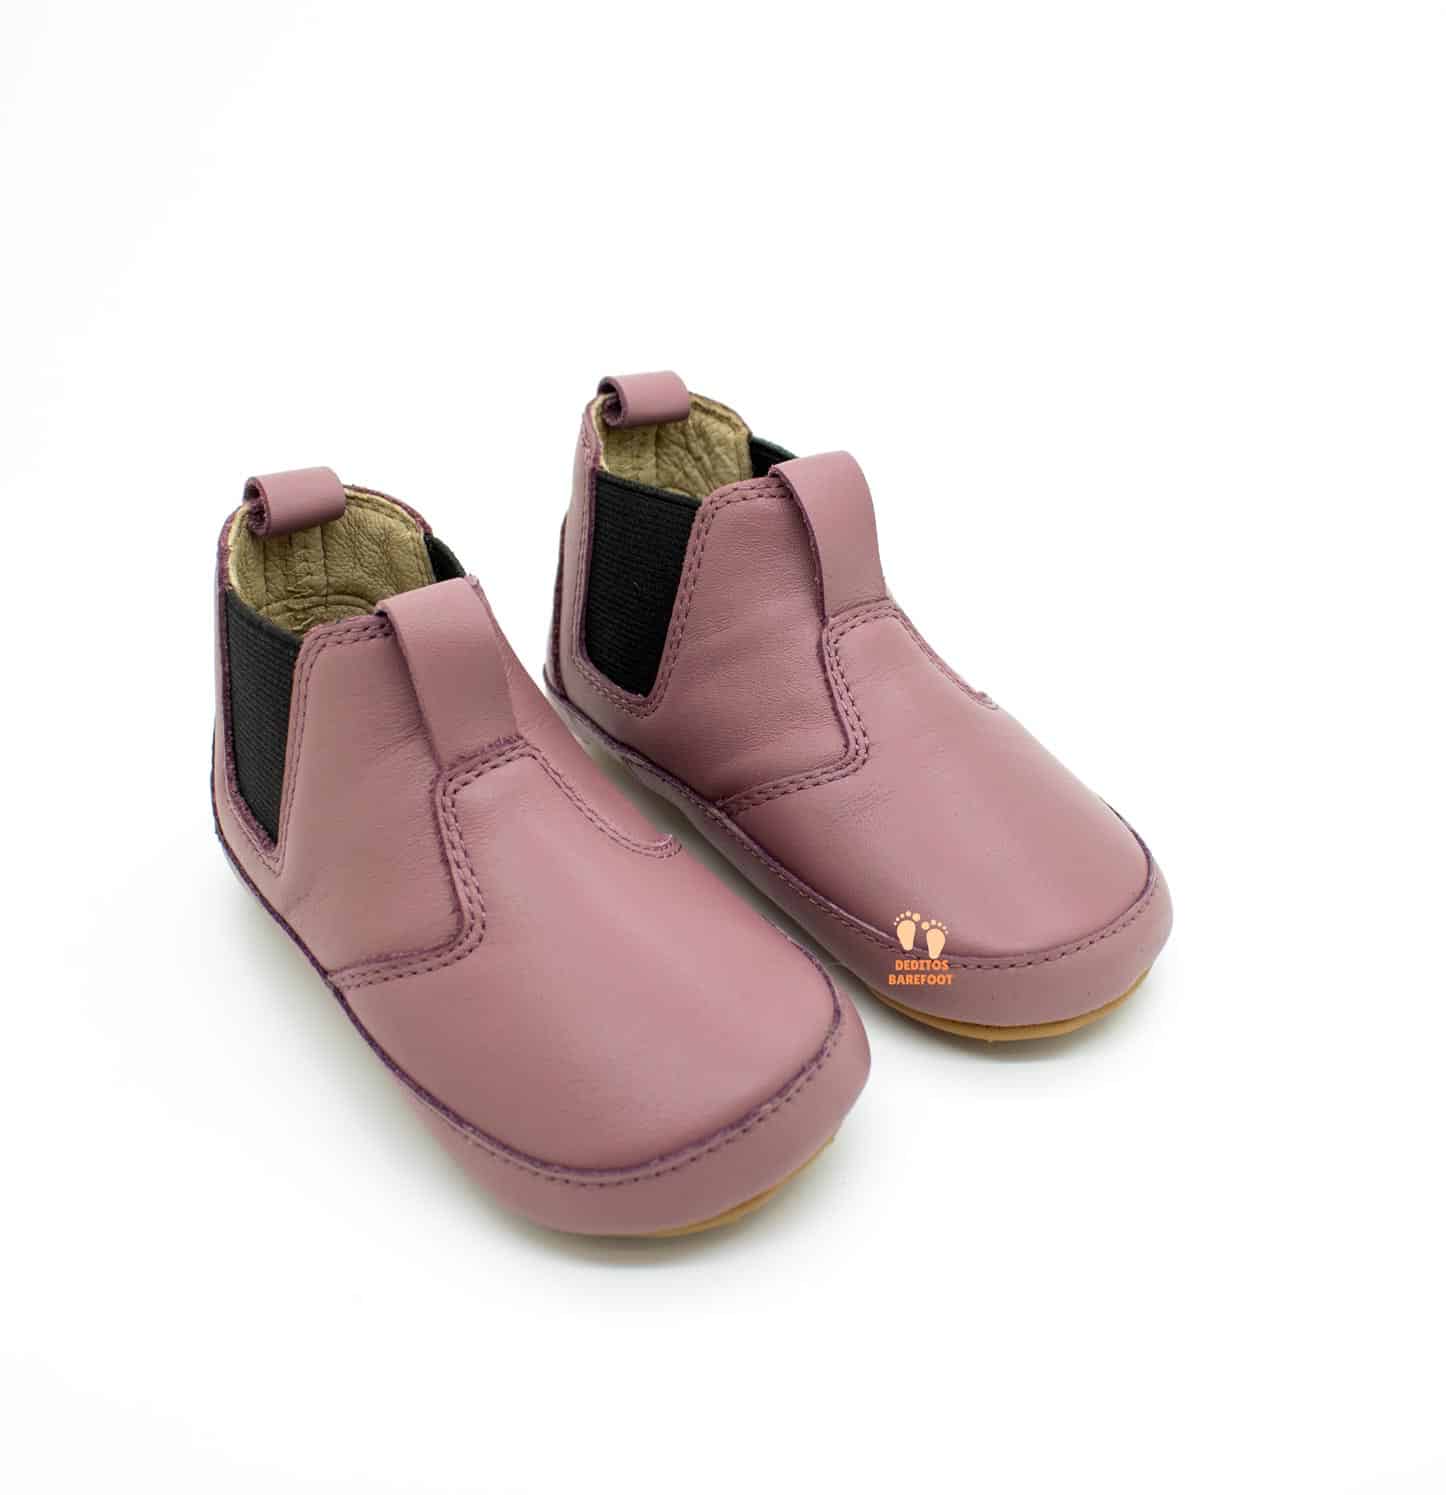 Calzado respetuoso de invierno - Bambini Shoes